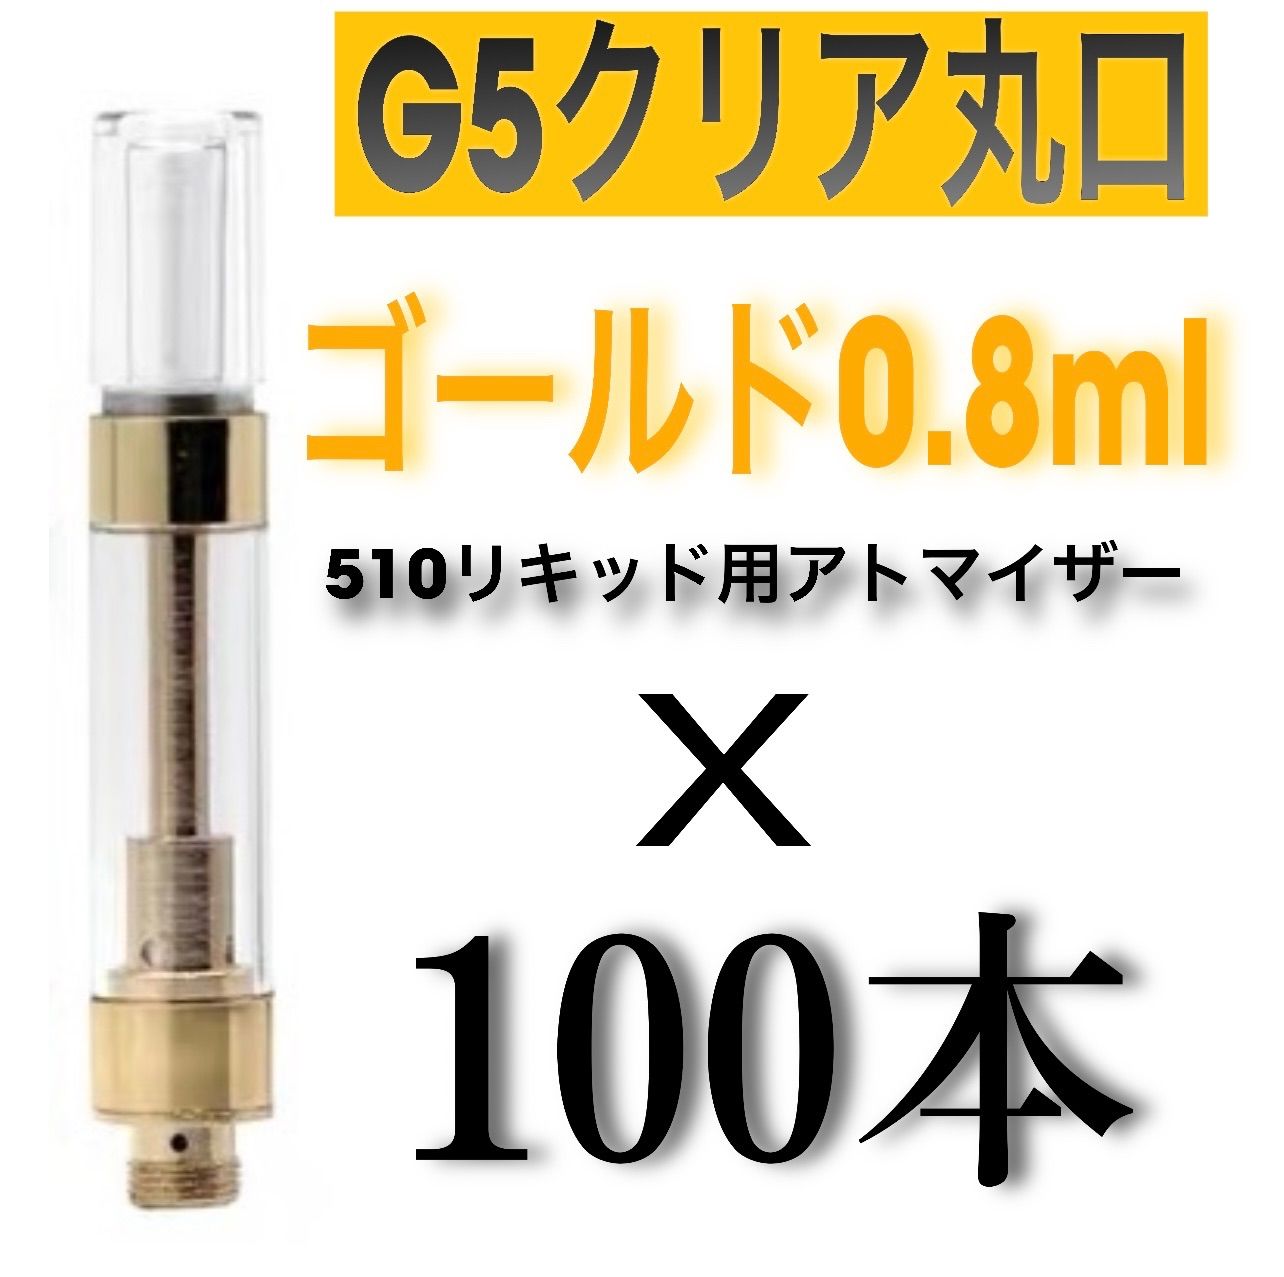 得価超特価100本セット 0.8ml クリアアトマイザー G5 510規格 フラットチップ 喫煙具・ライター